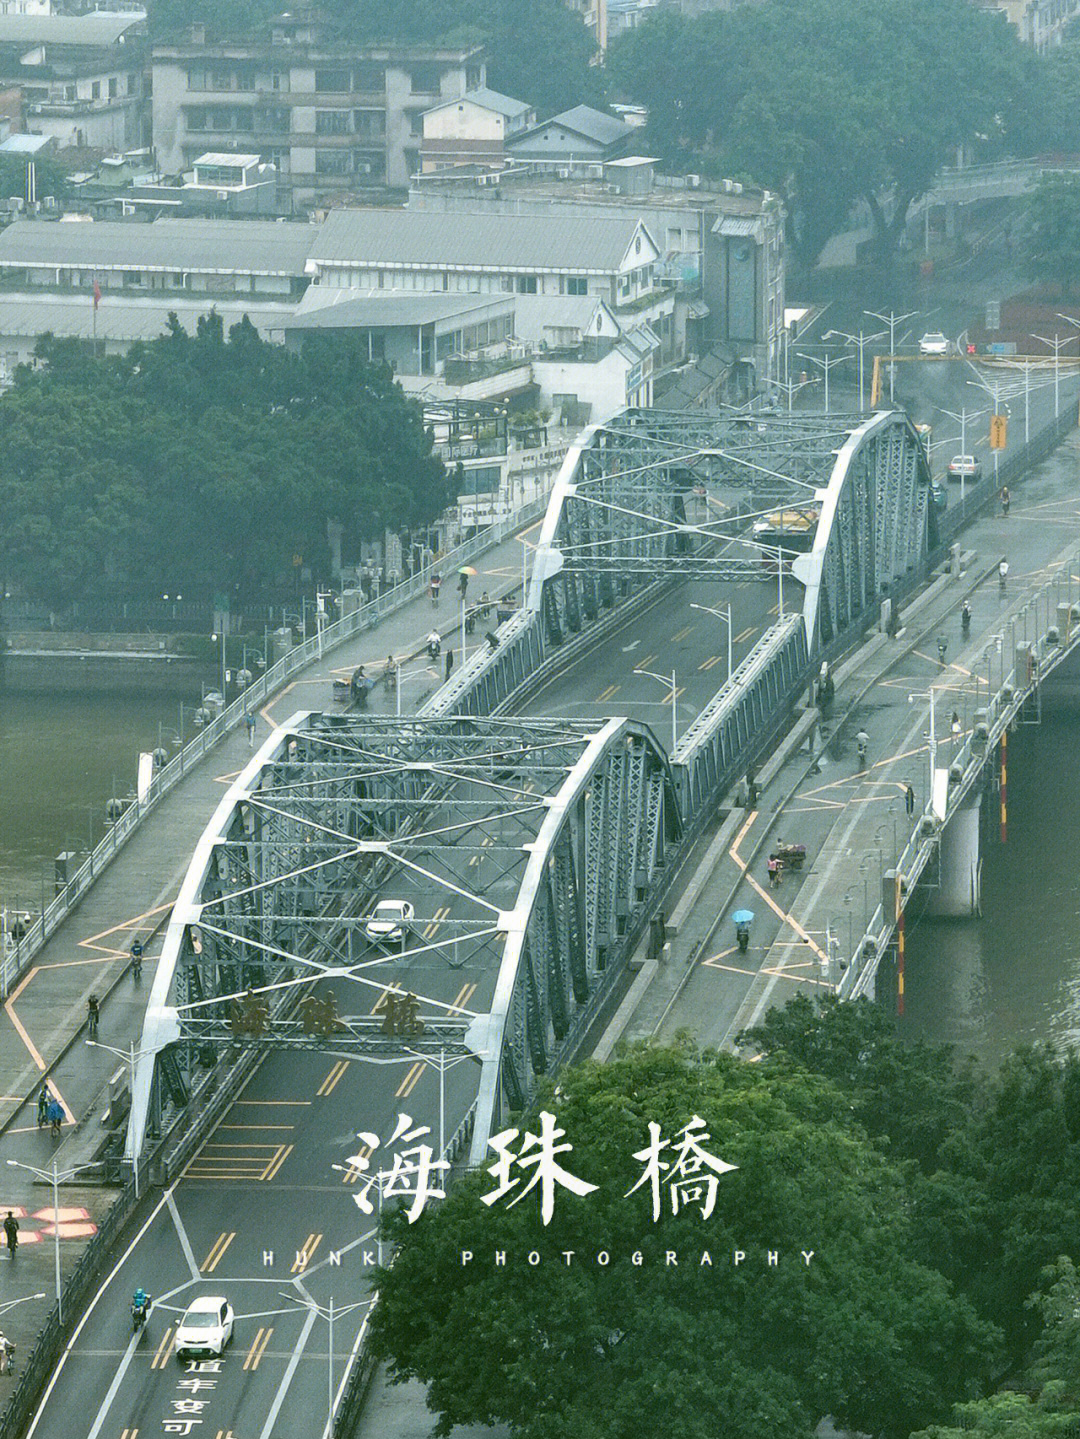 海珠桥历史简介图片图片